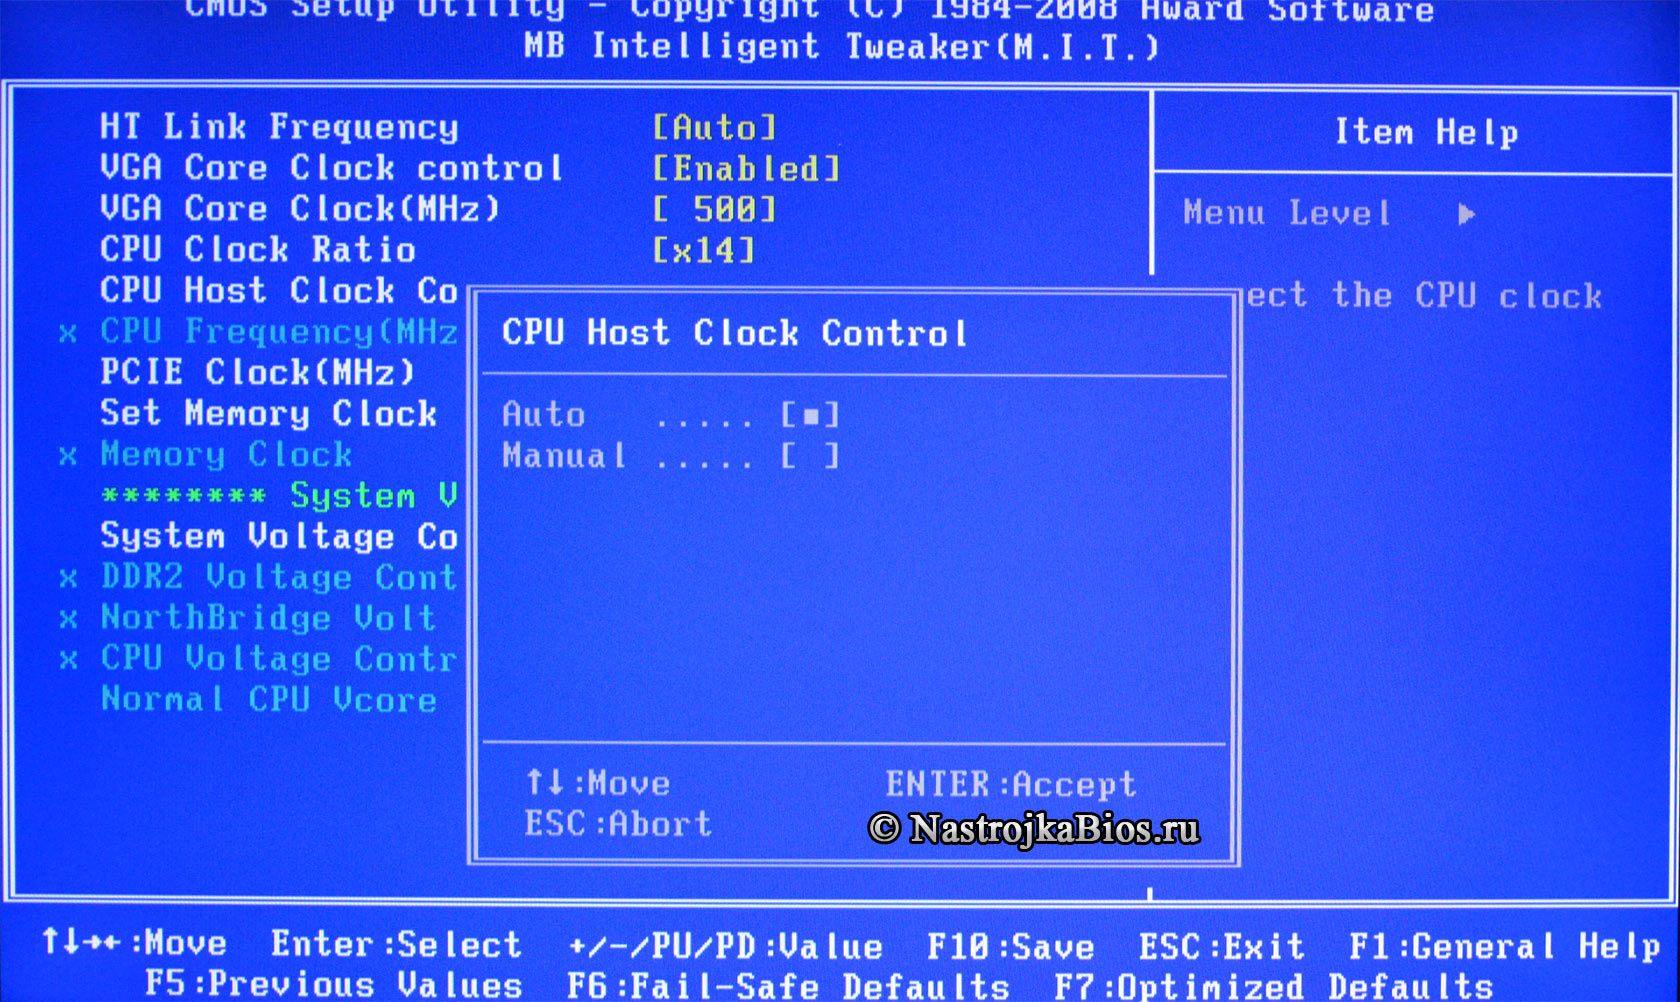 CPU Host Clock Control